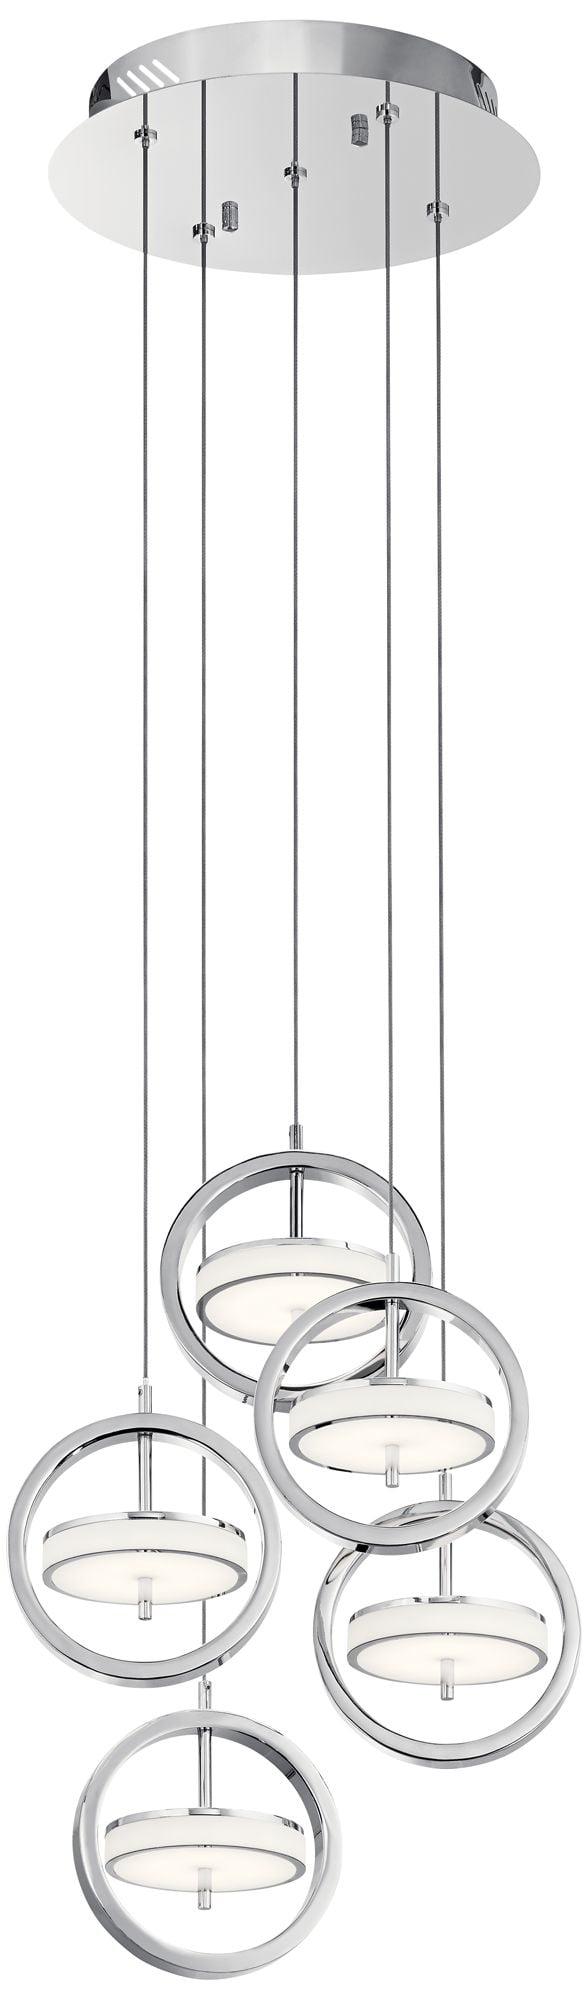 Elan Metro Sleek Chrome 5-Light LED Globe Pendant with Acrylic Shades